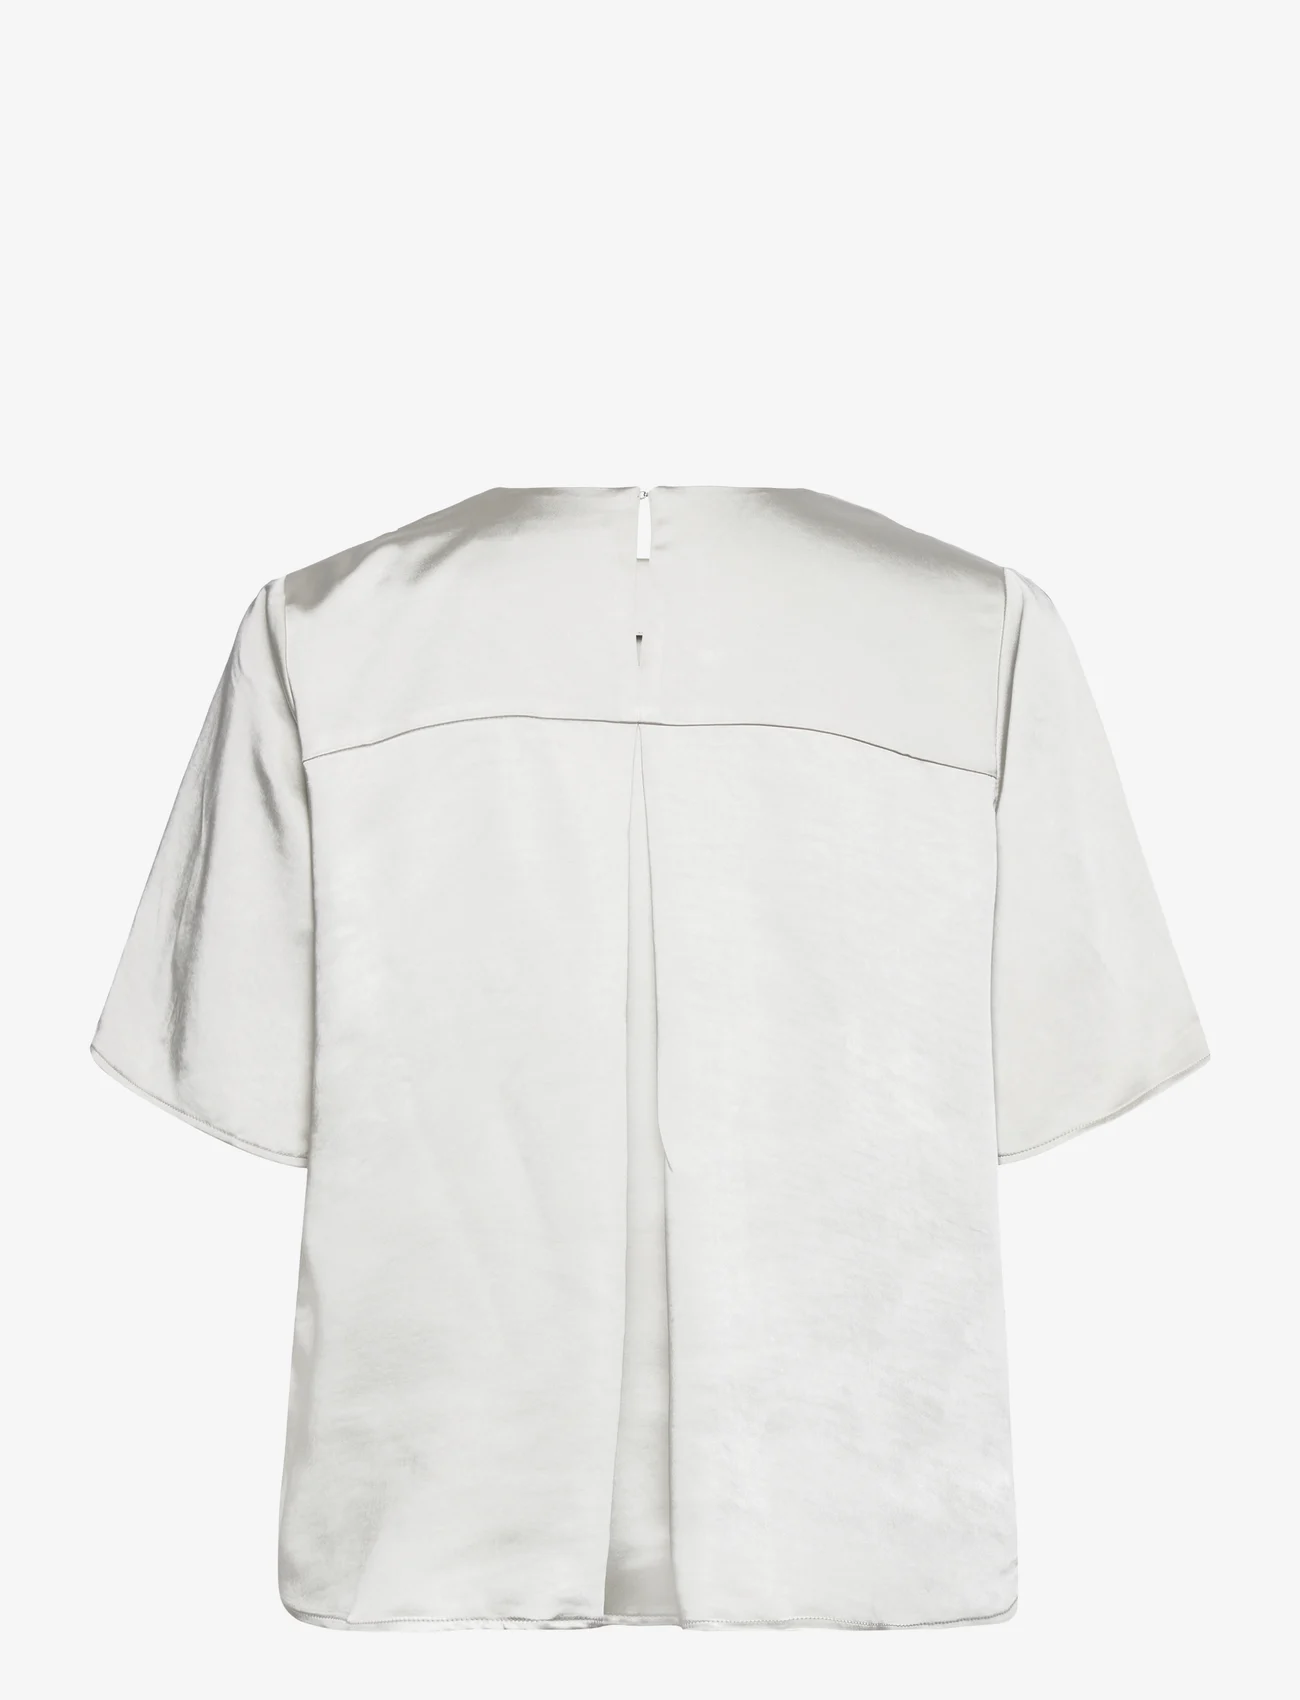 Samsøe Samsøe - Denise SS top 14908 - blouses korte mouwen - white onyx - 1